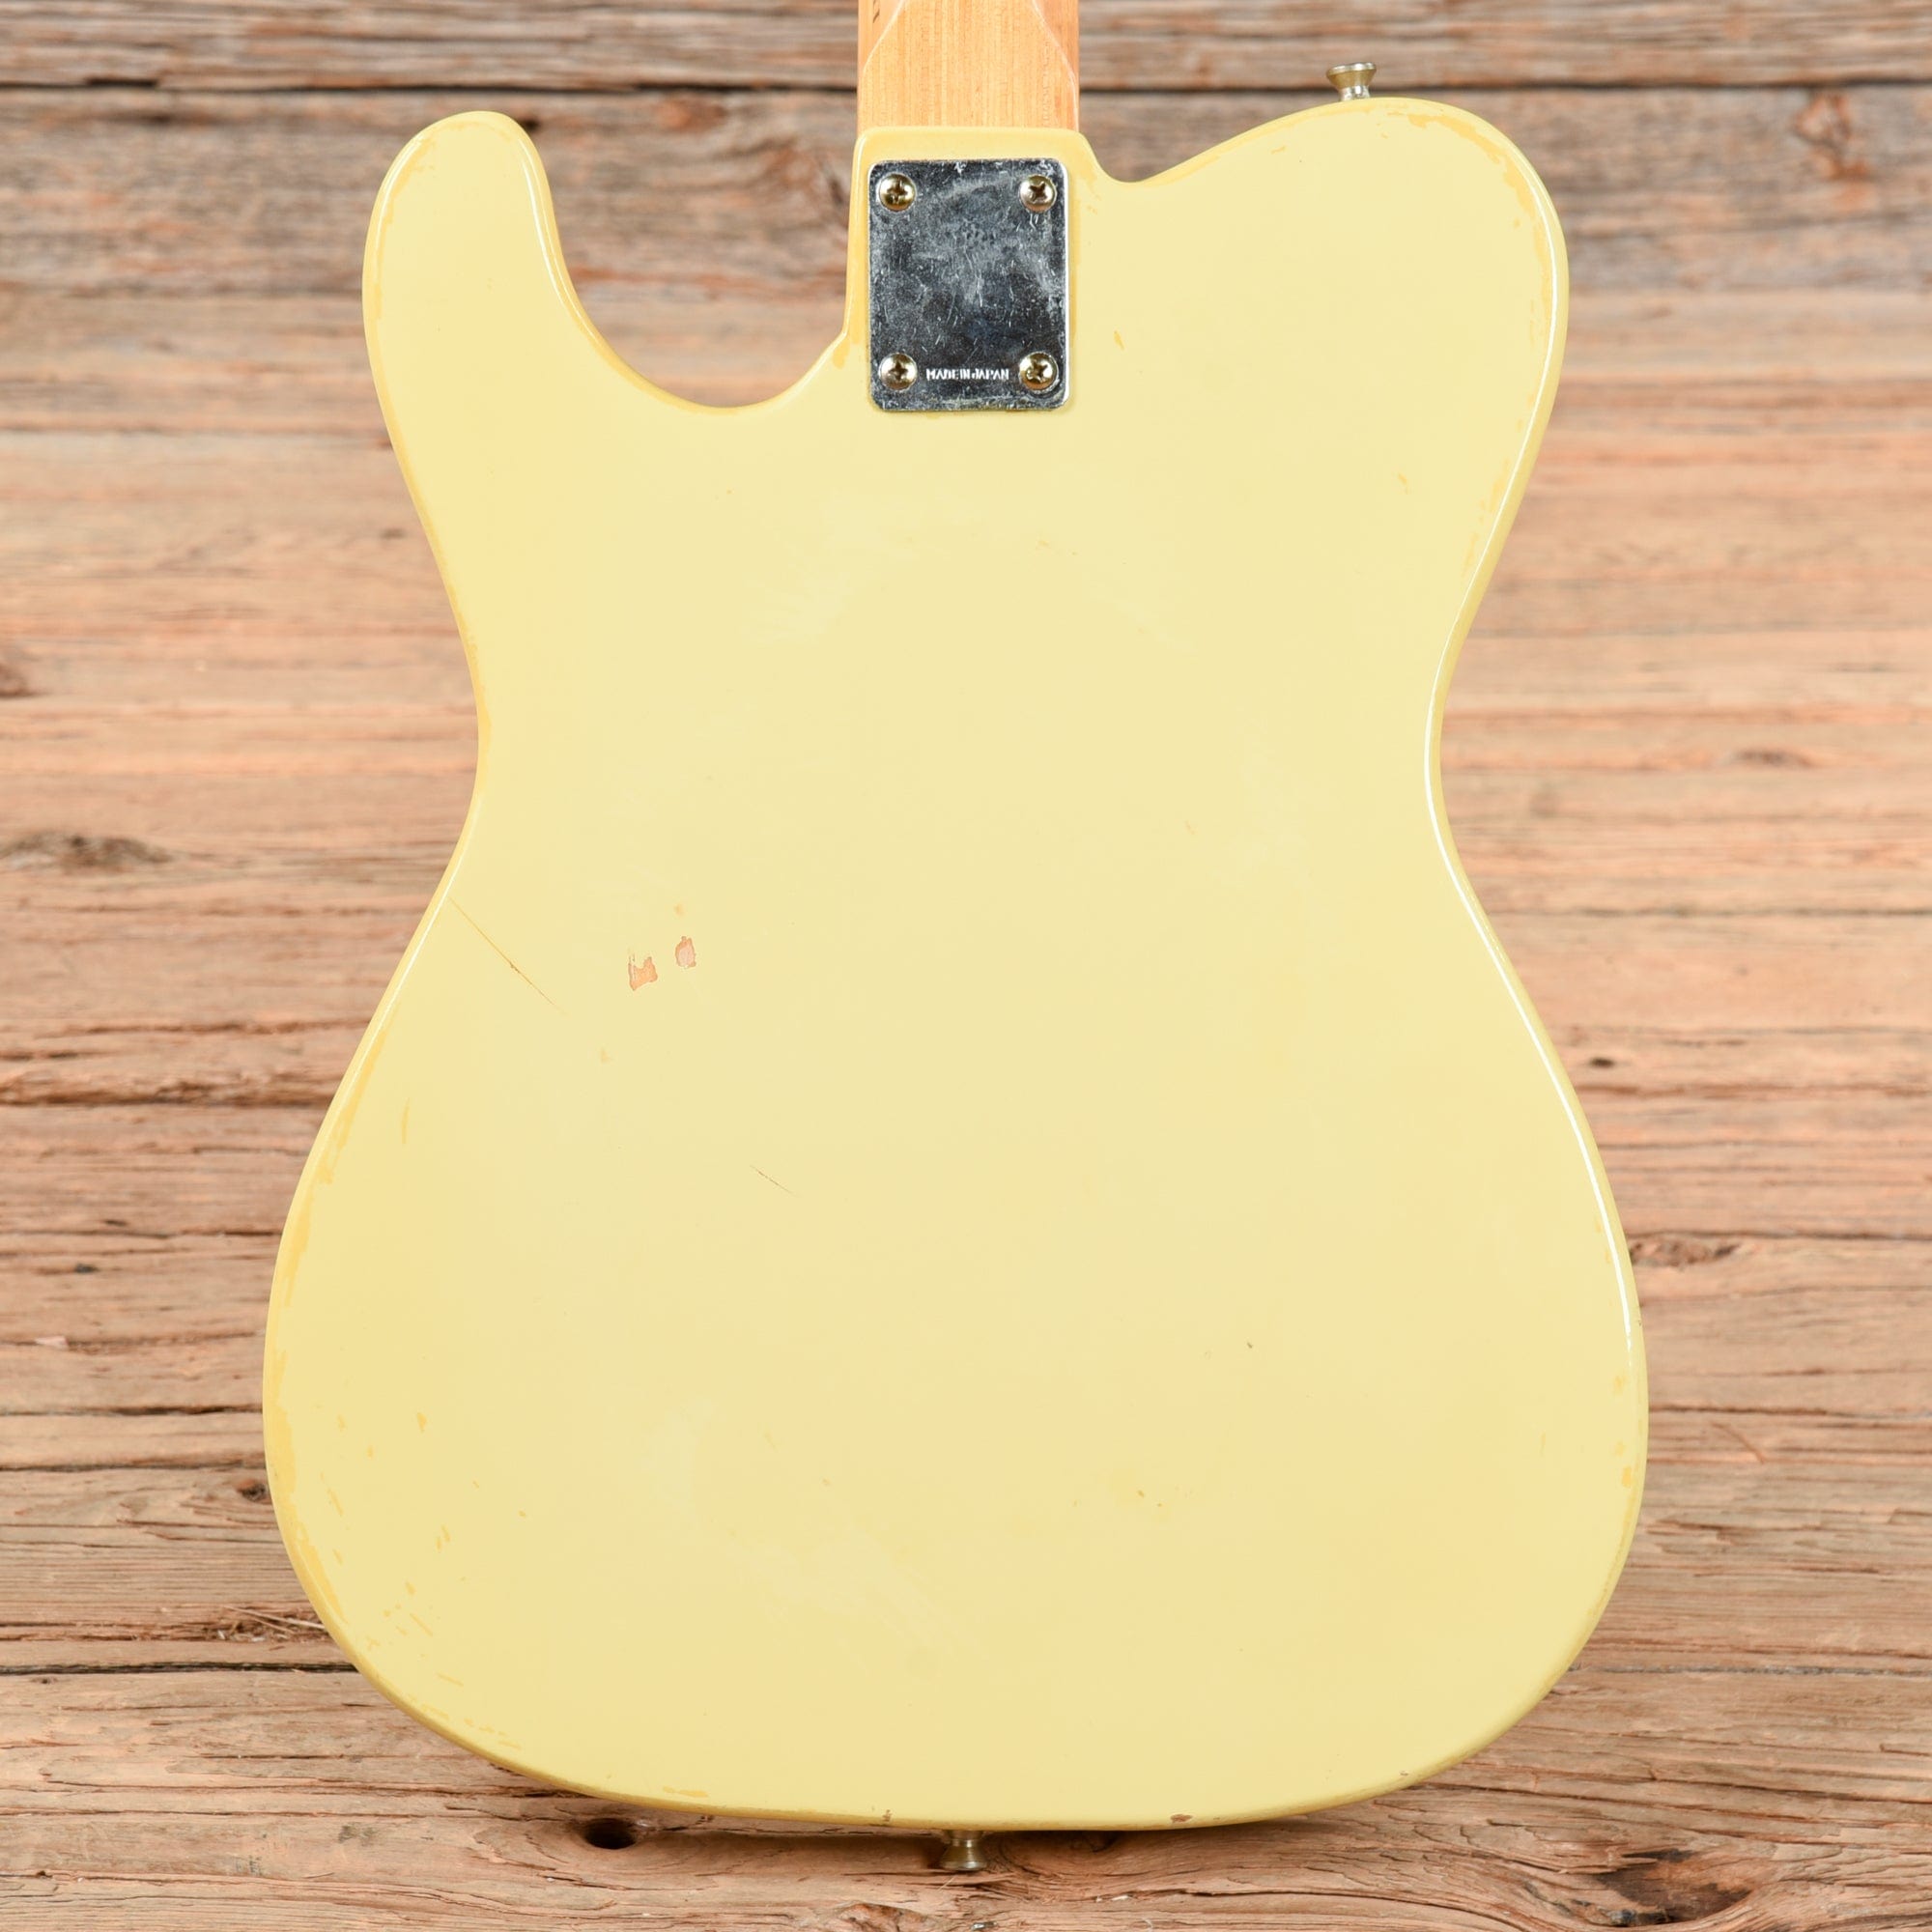 National FT-440 Finger Talker Blonde 1970s Electric Guitars / Solid Body